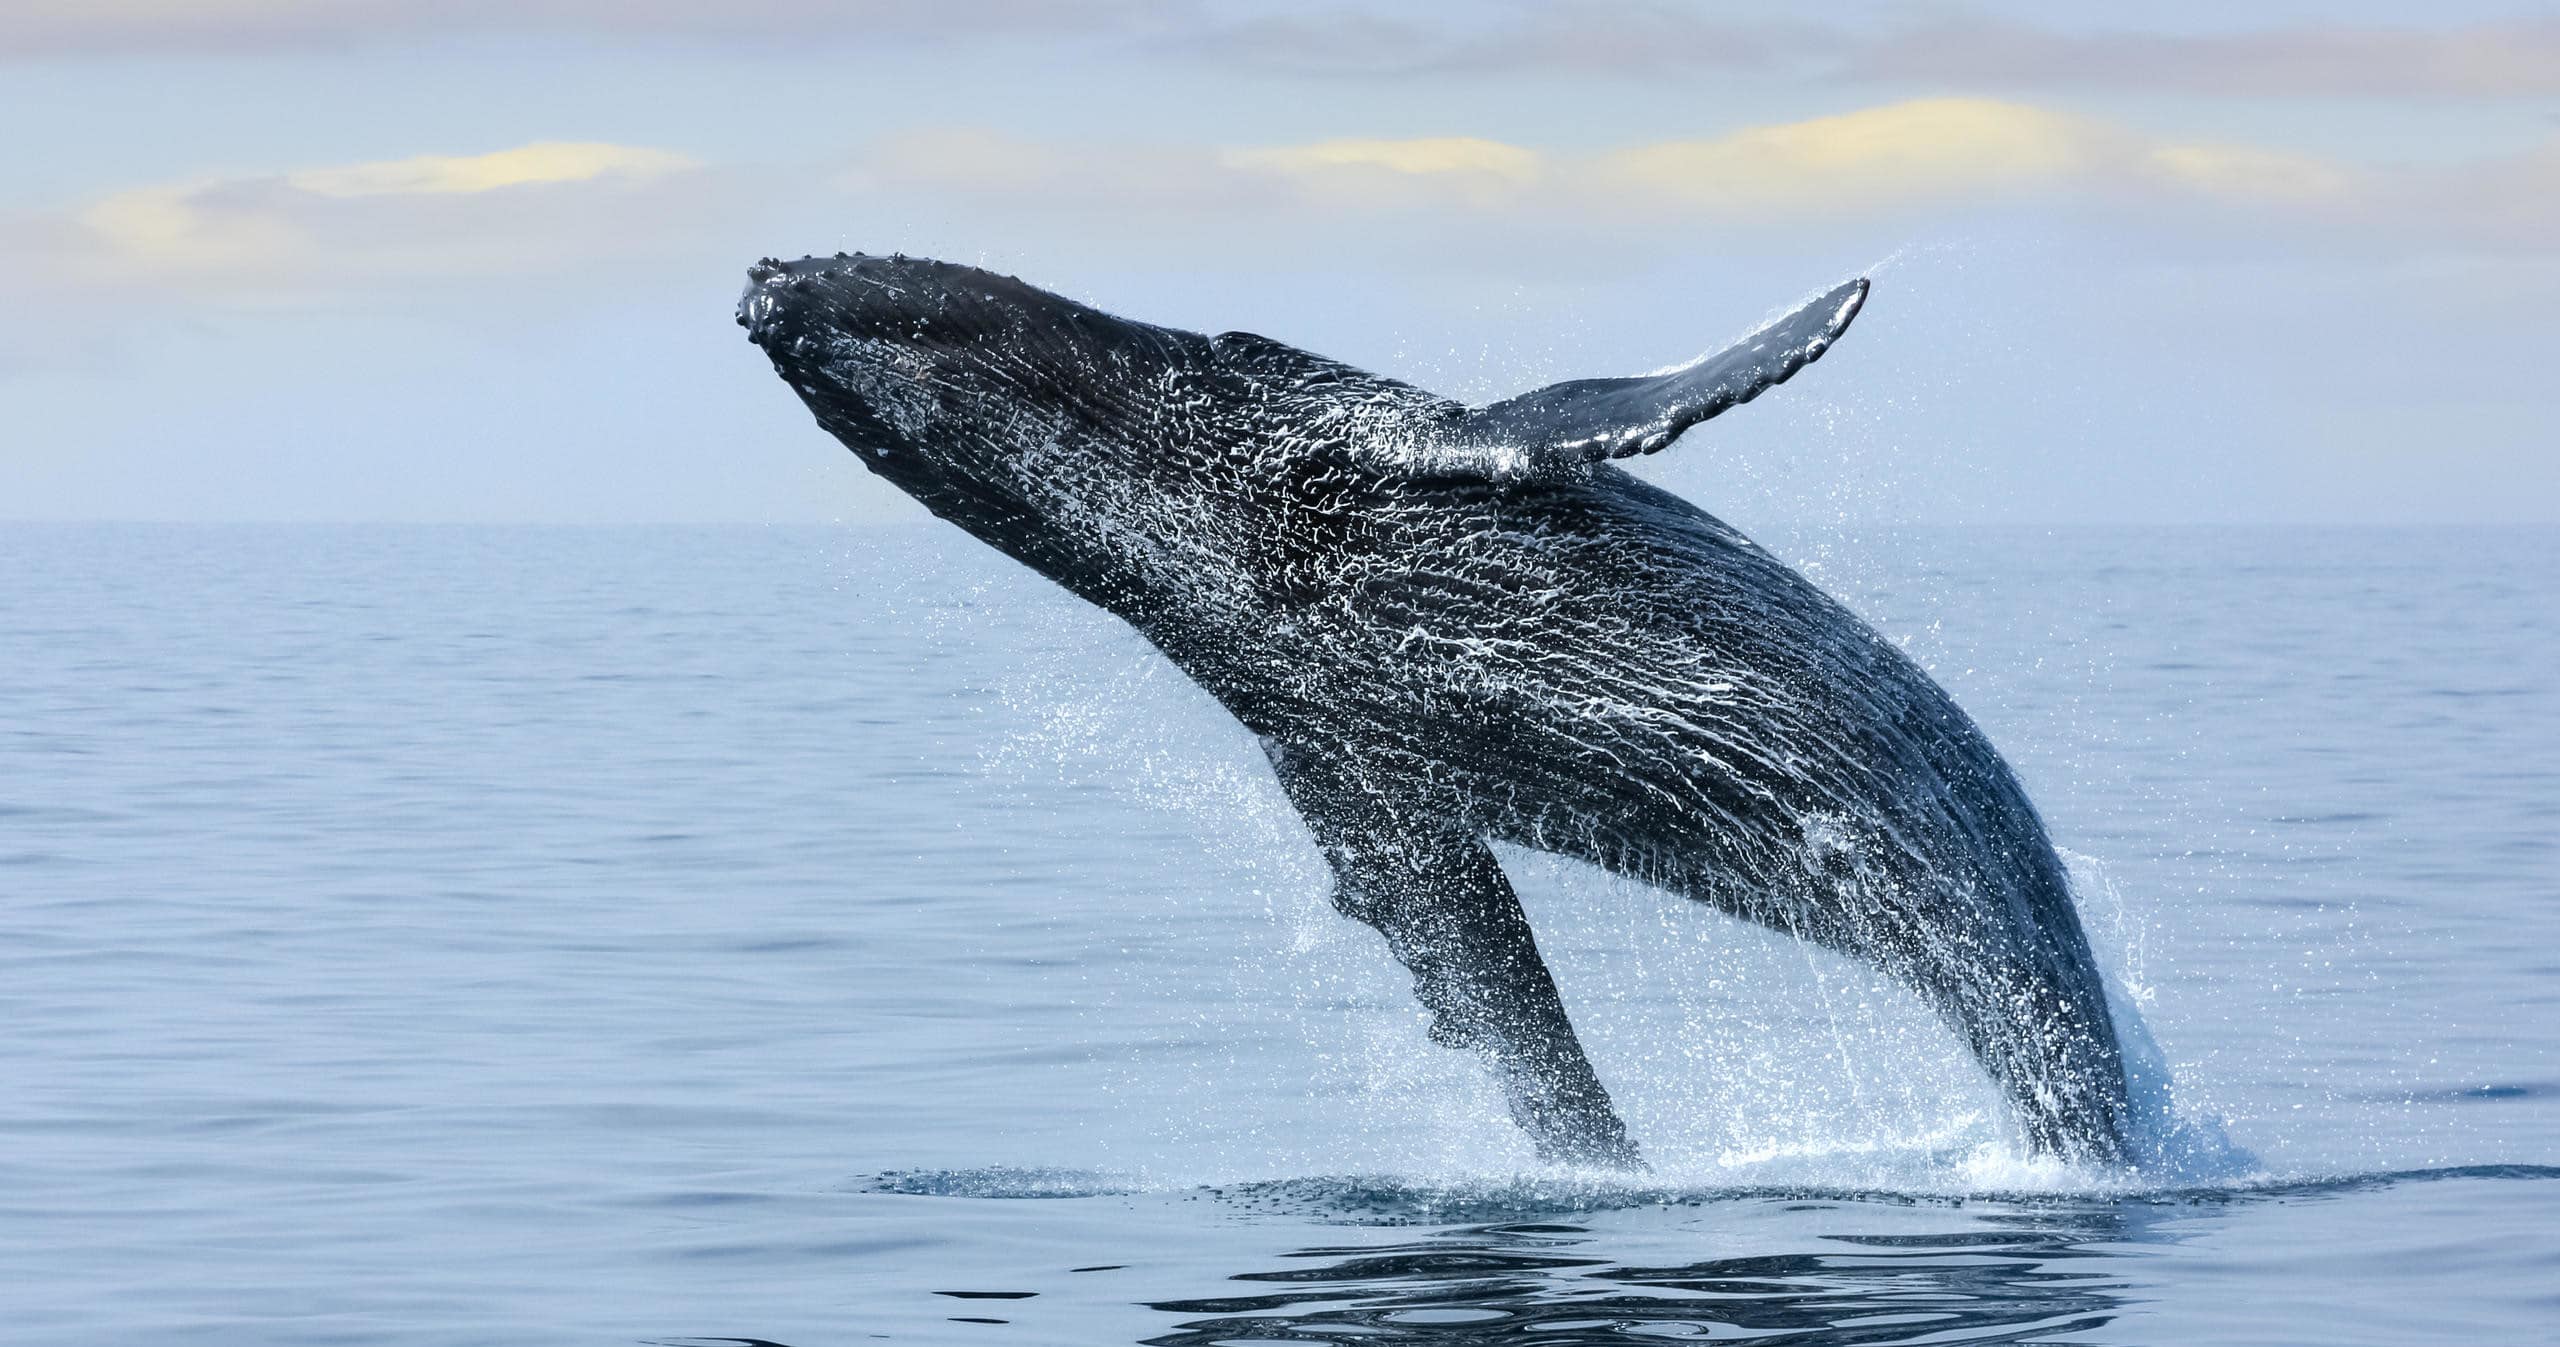 kauai zodiac tourz whale watching review